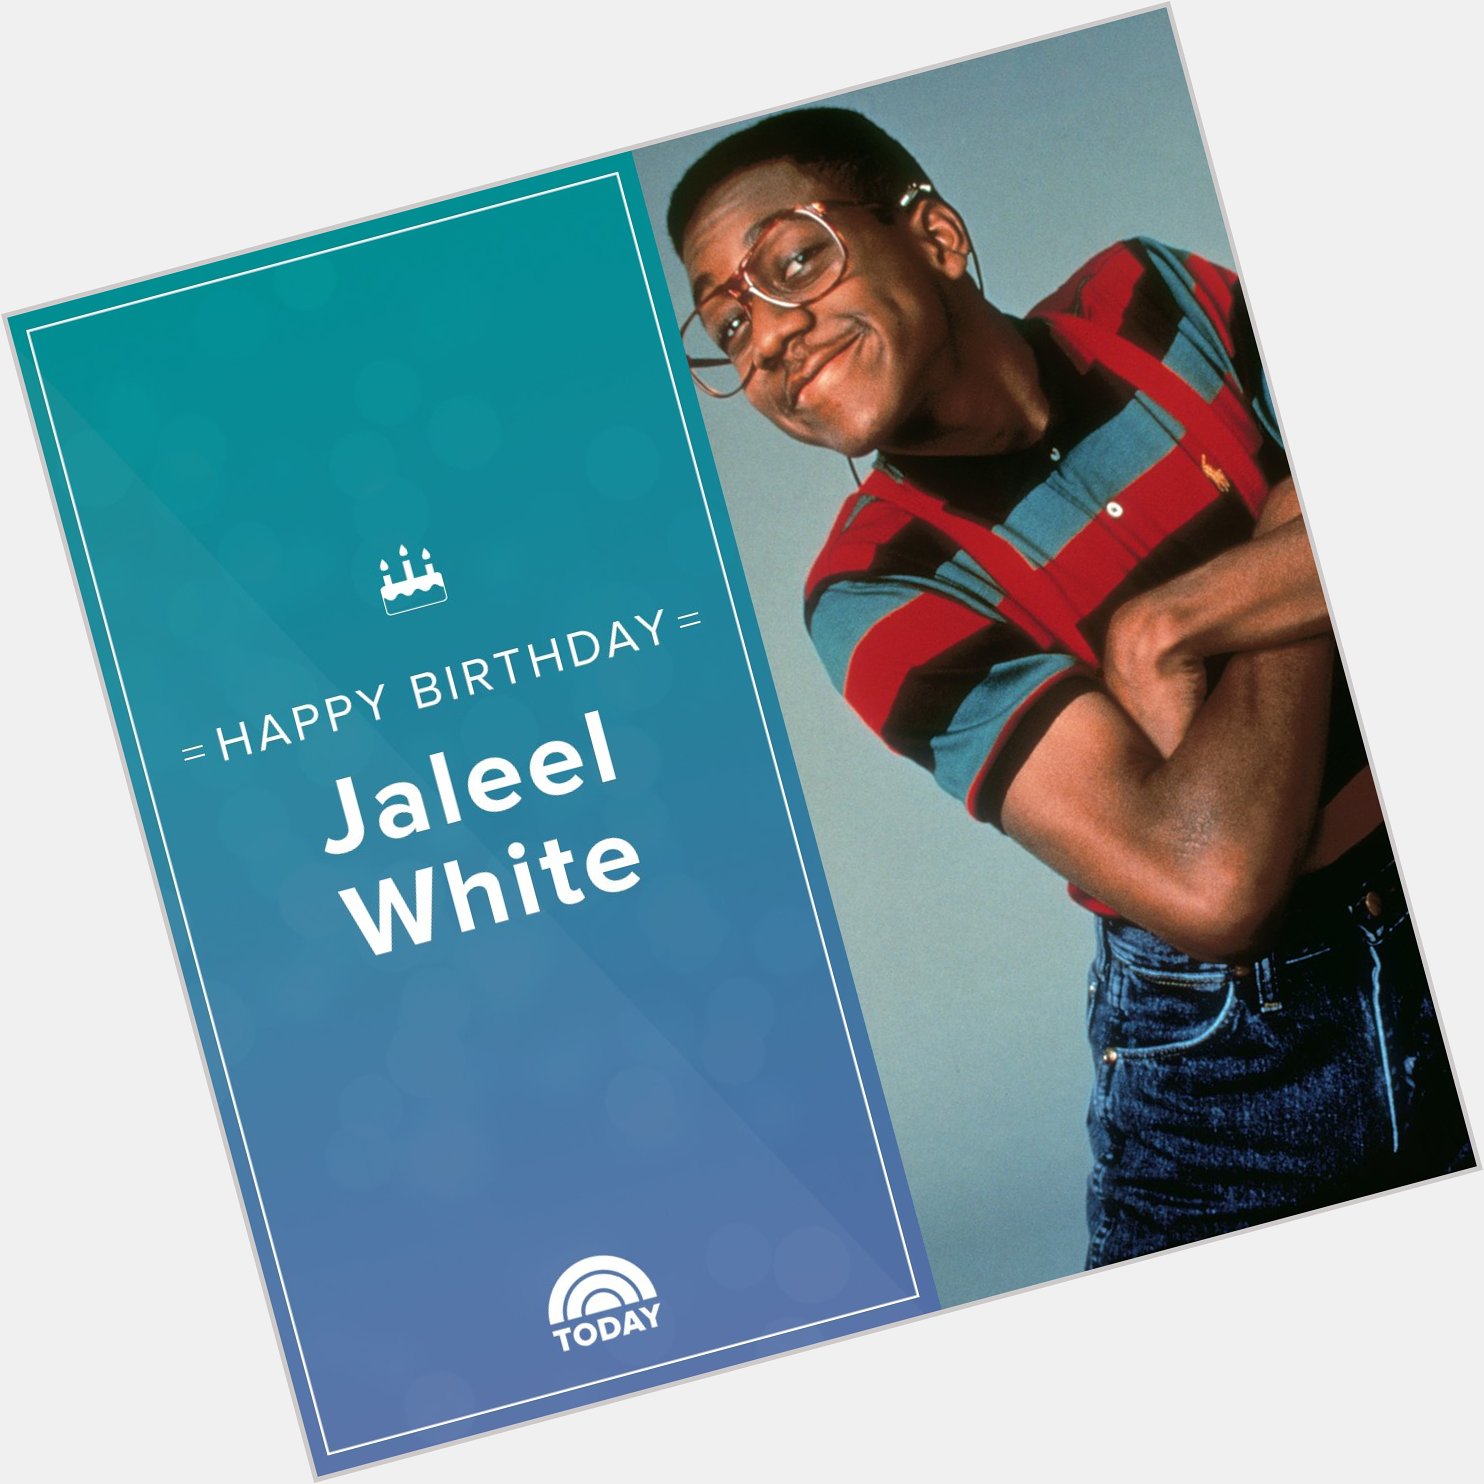 Happy birthday, Jaleel White! 